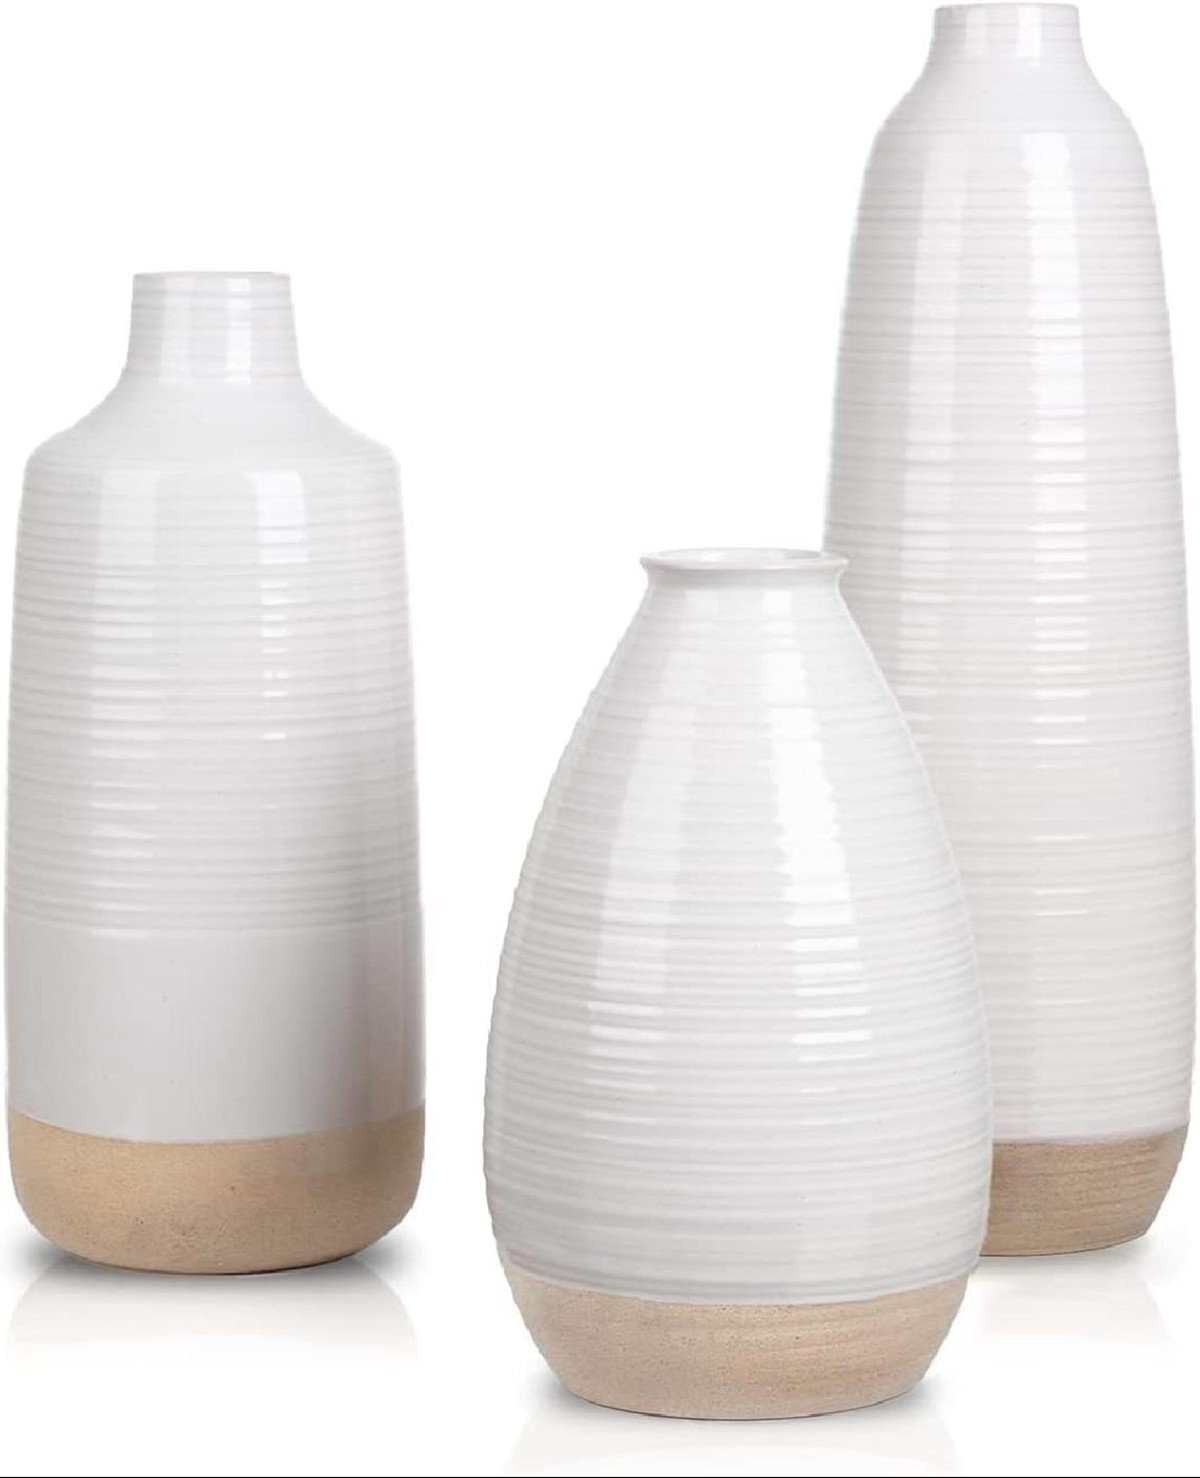 Corrigan Studio® Modern Ceramic Vase For Home Decor, Tall White